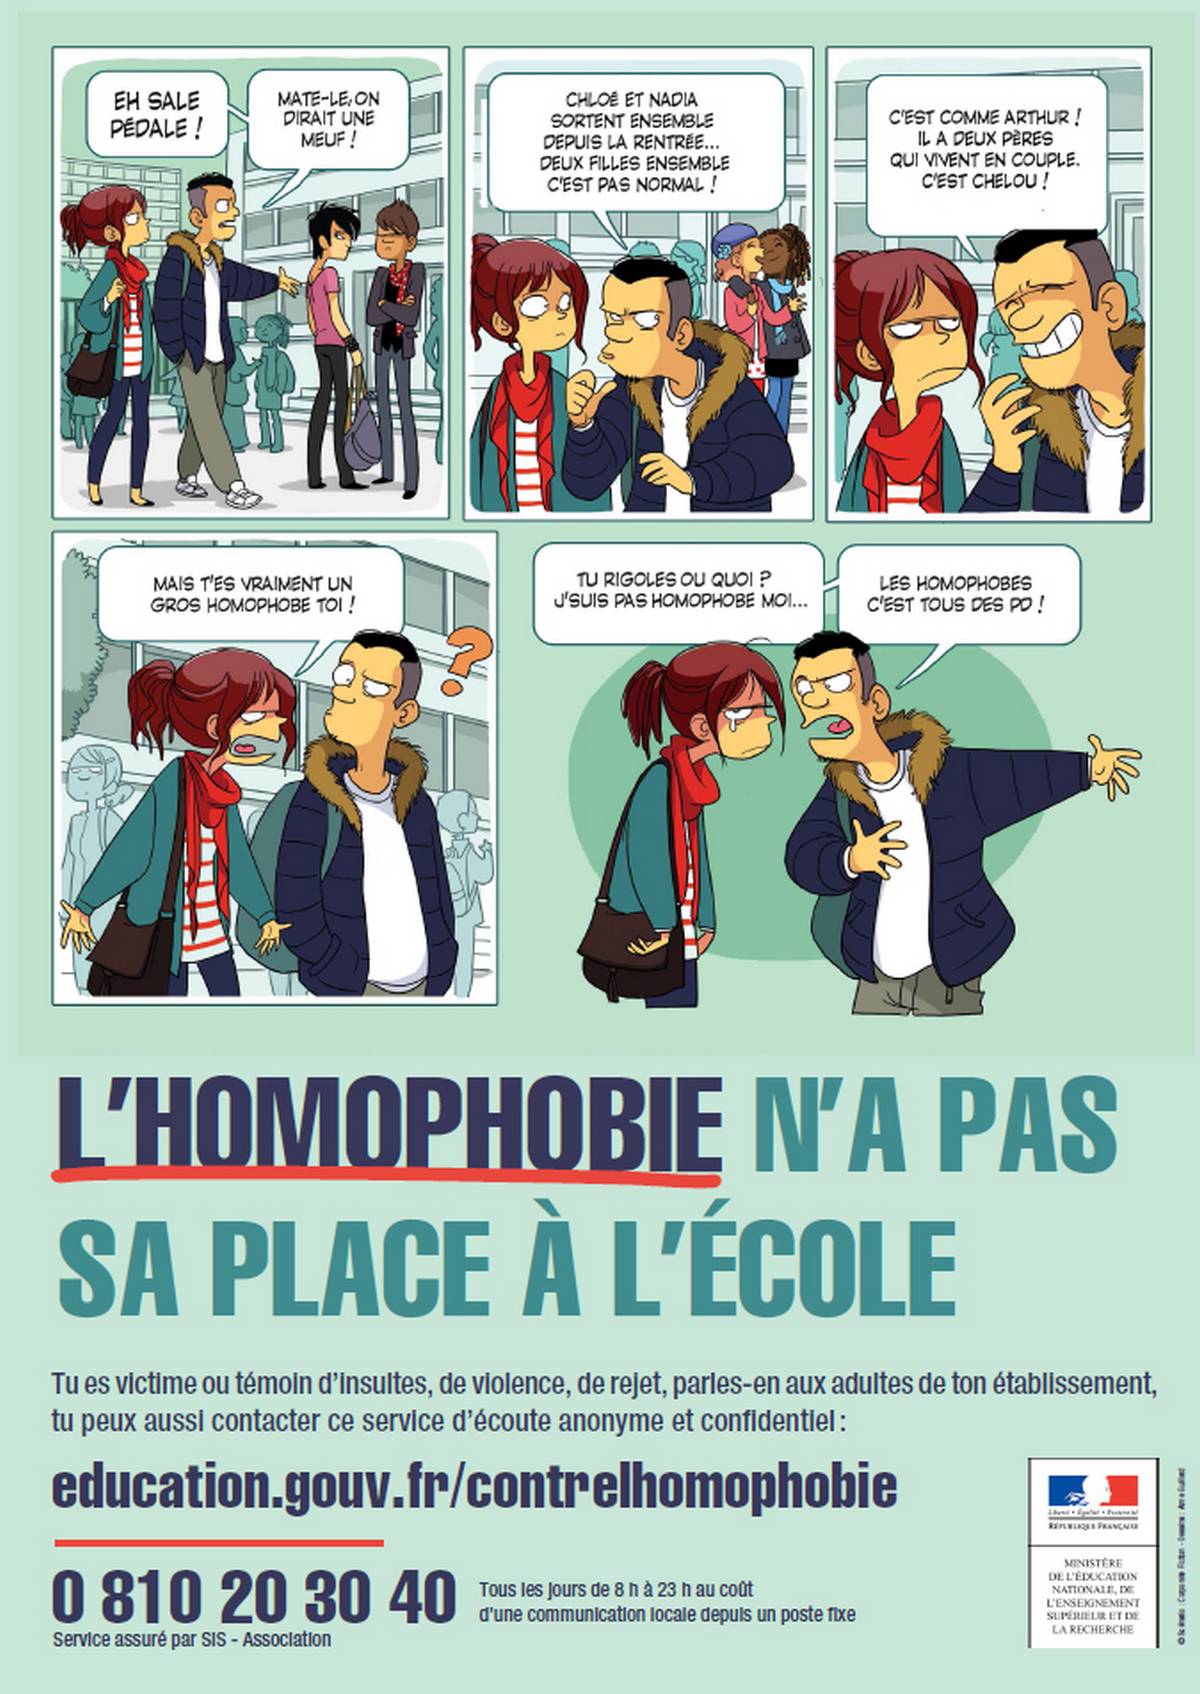 La dernière campagne contre l'homophobie de l'Education nationale en France.